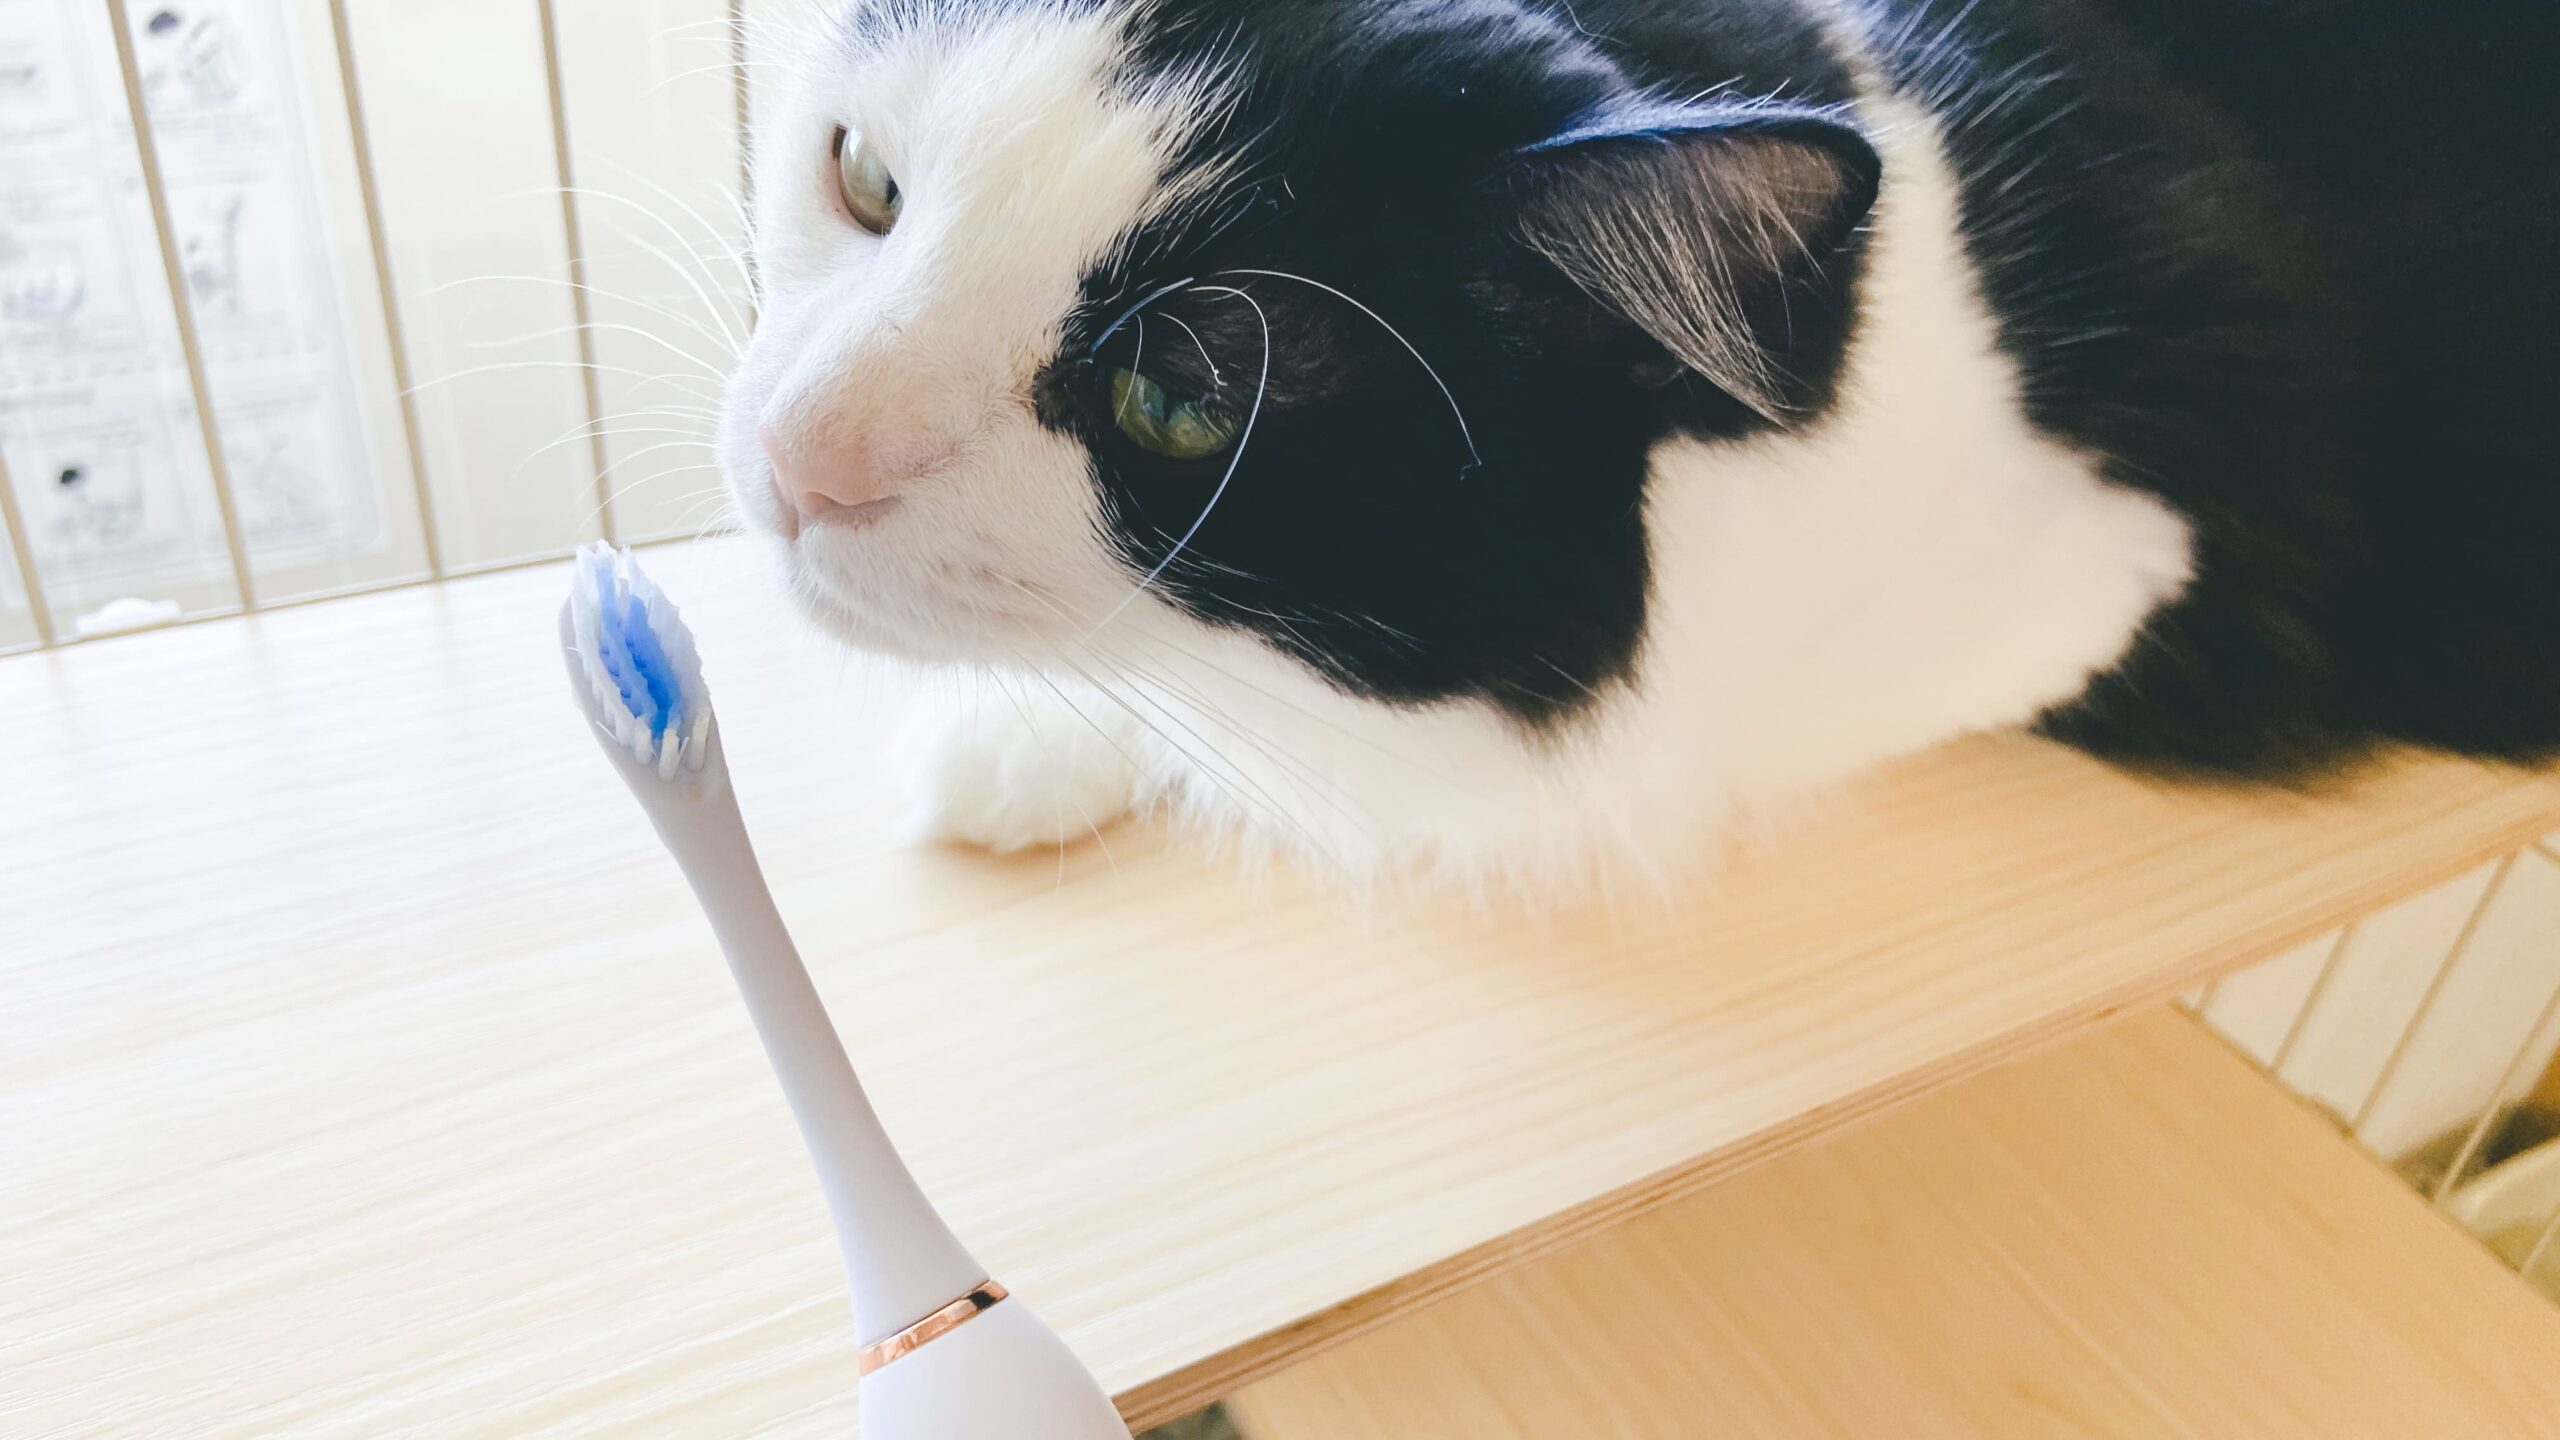 ガレイド電動歯ブラシを嗅いでいる猫